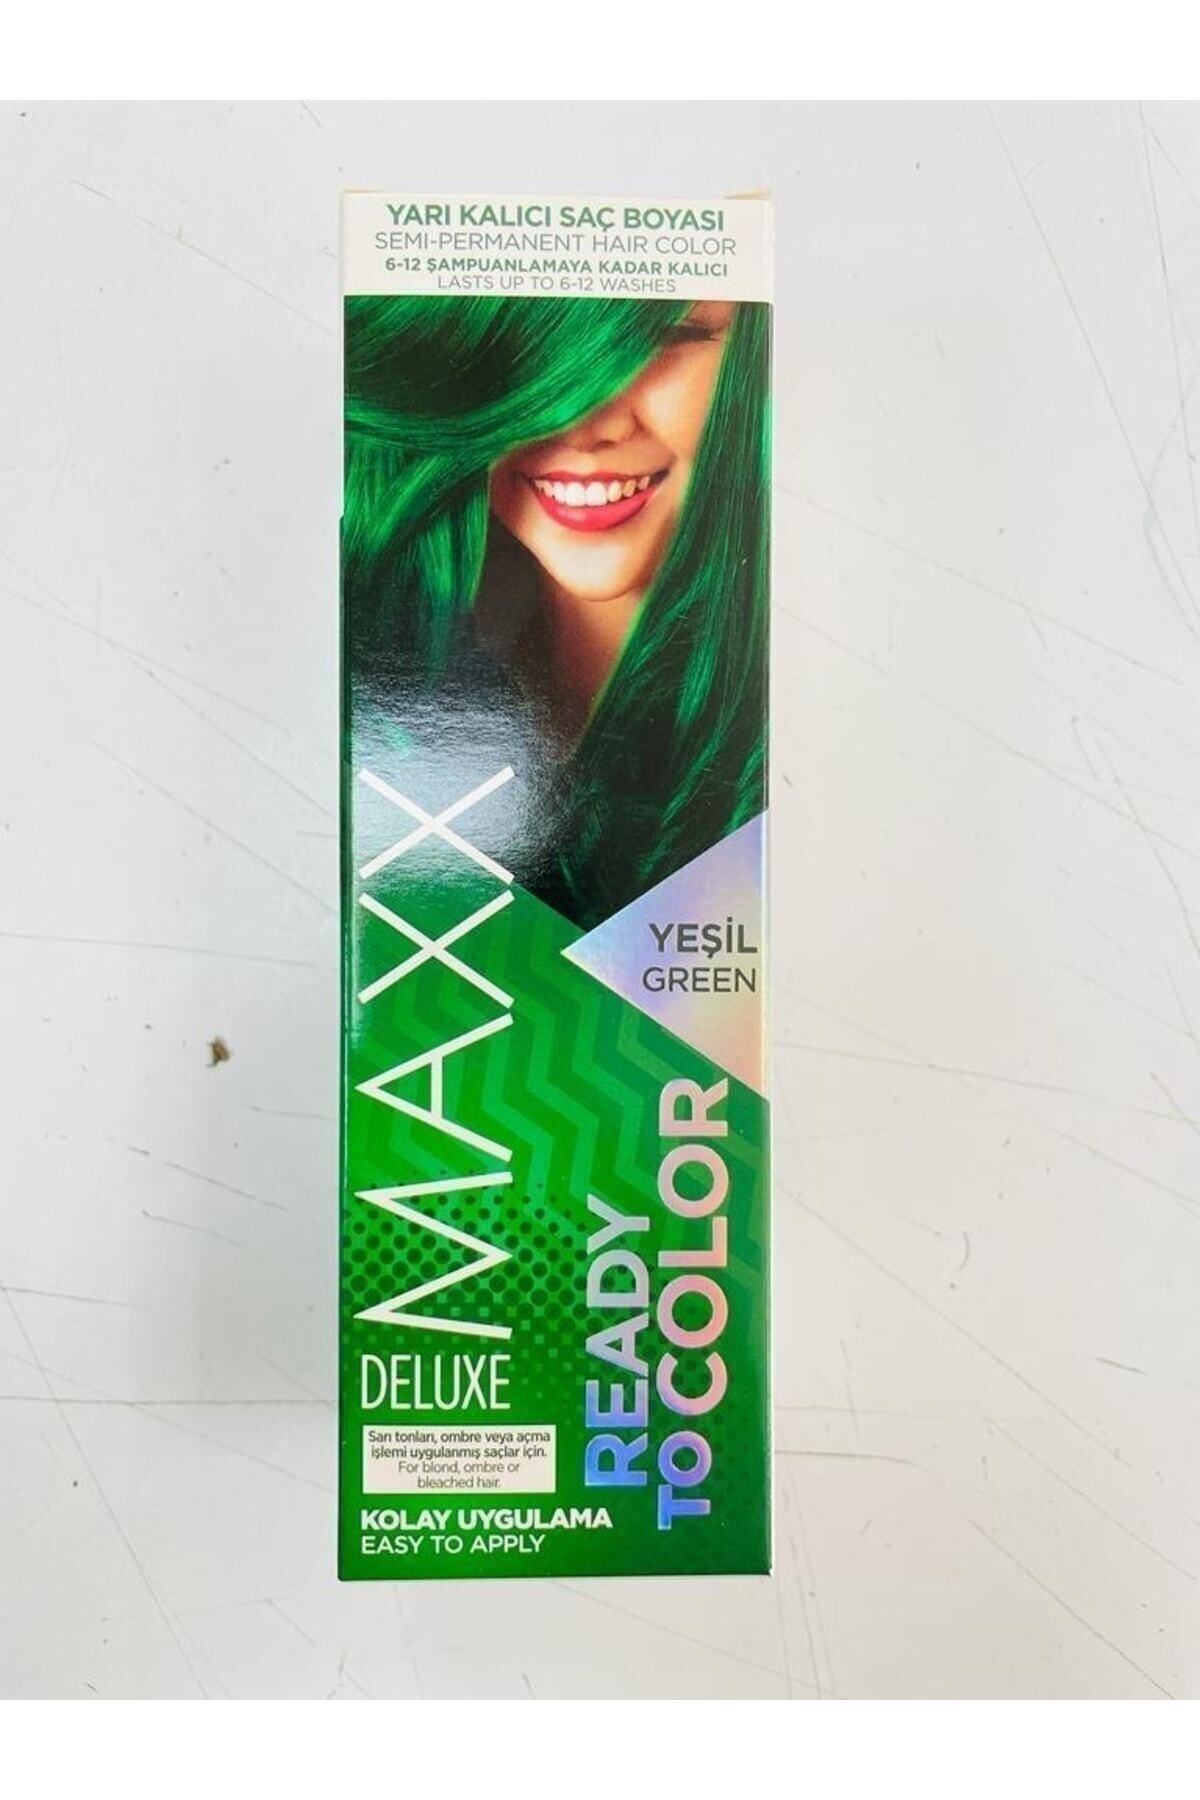 MAXX DELUXE Ready To Color Yarı Kalıcı Saç Boyası - Yeşil